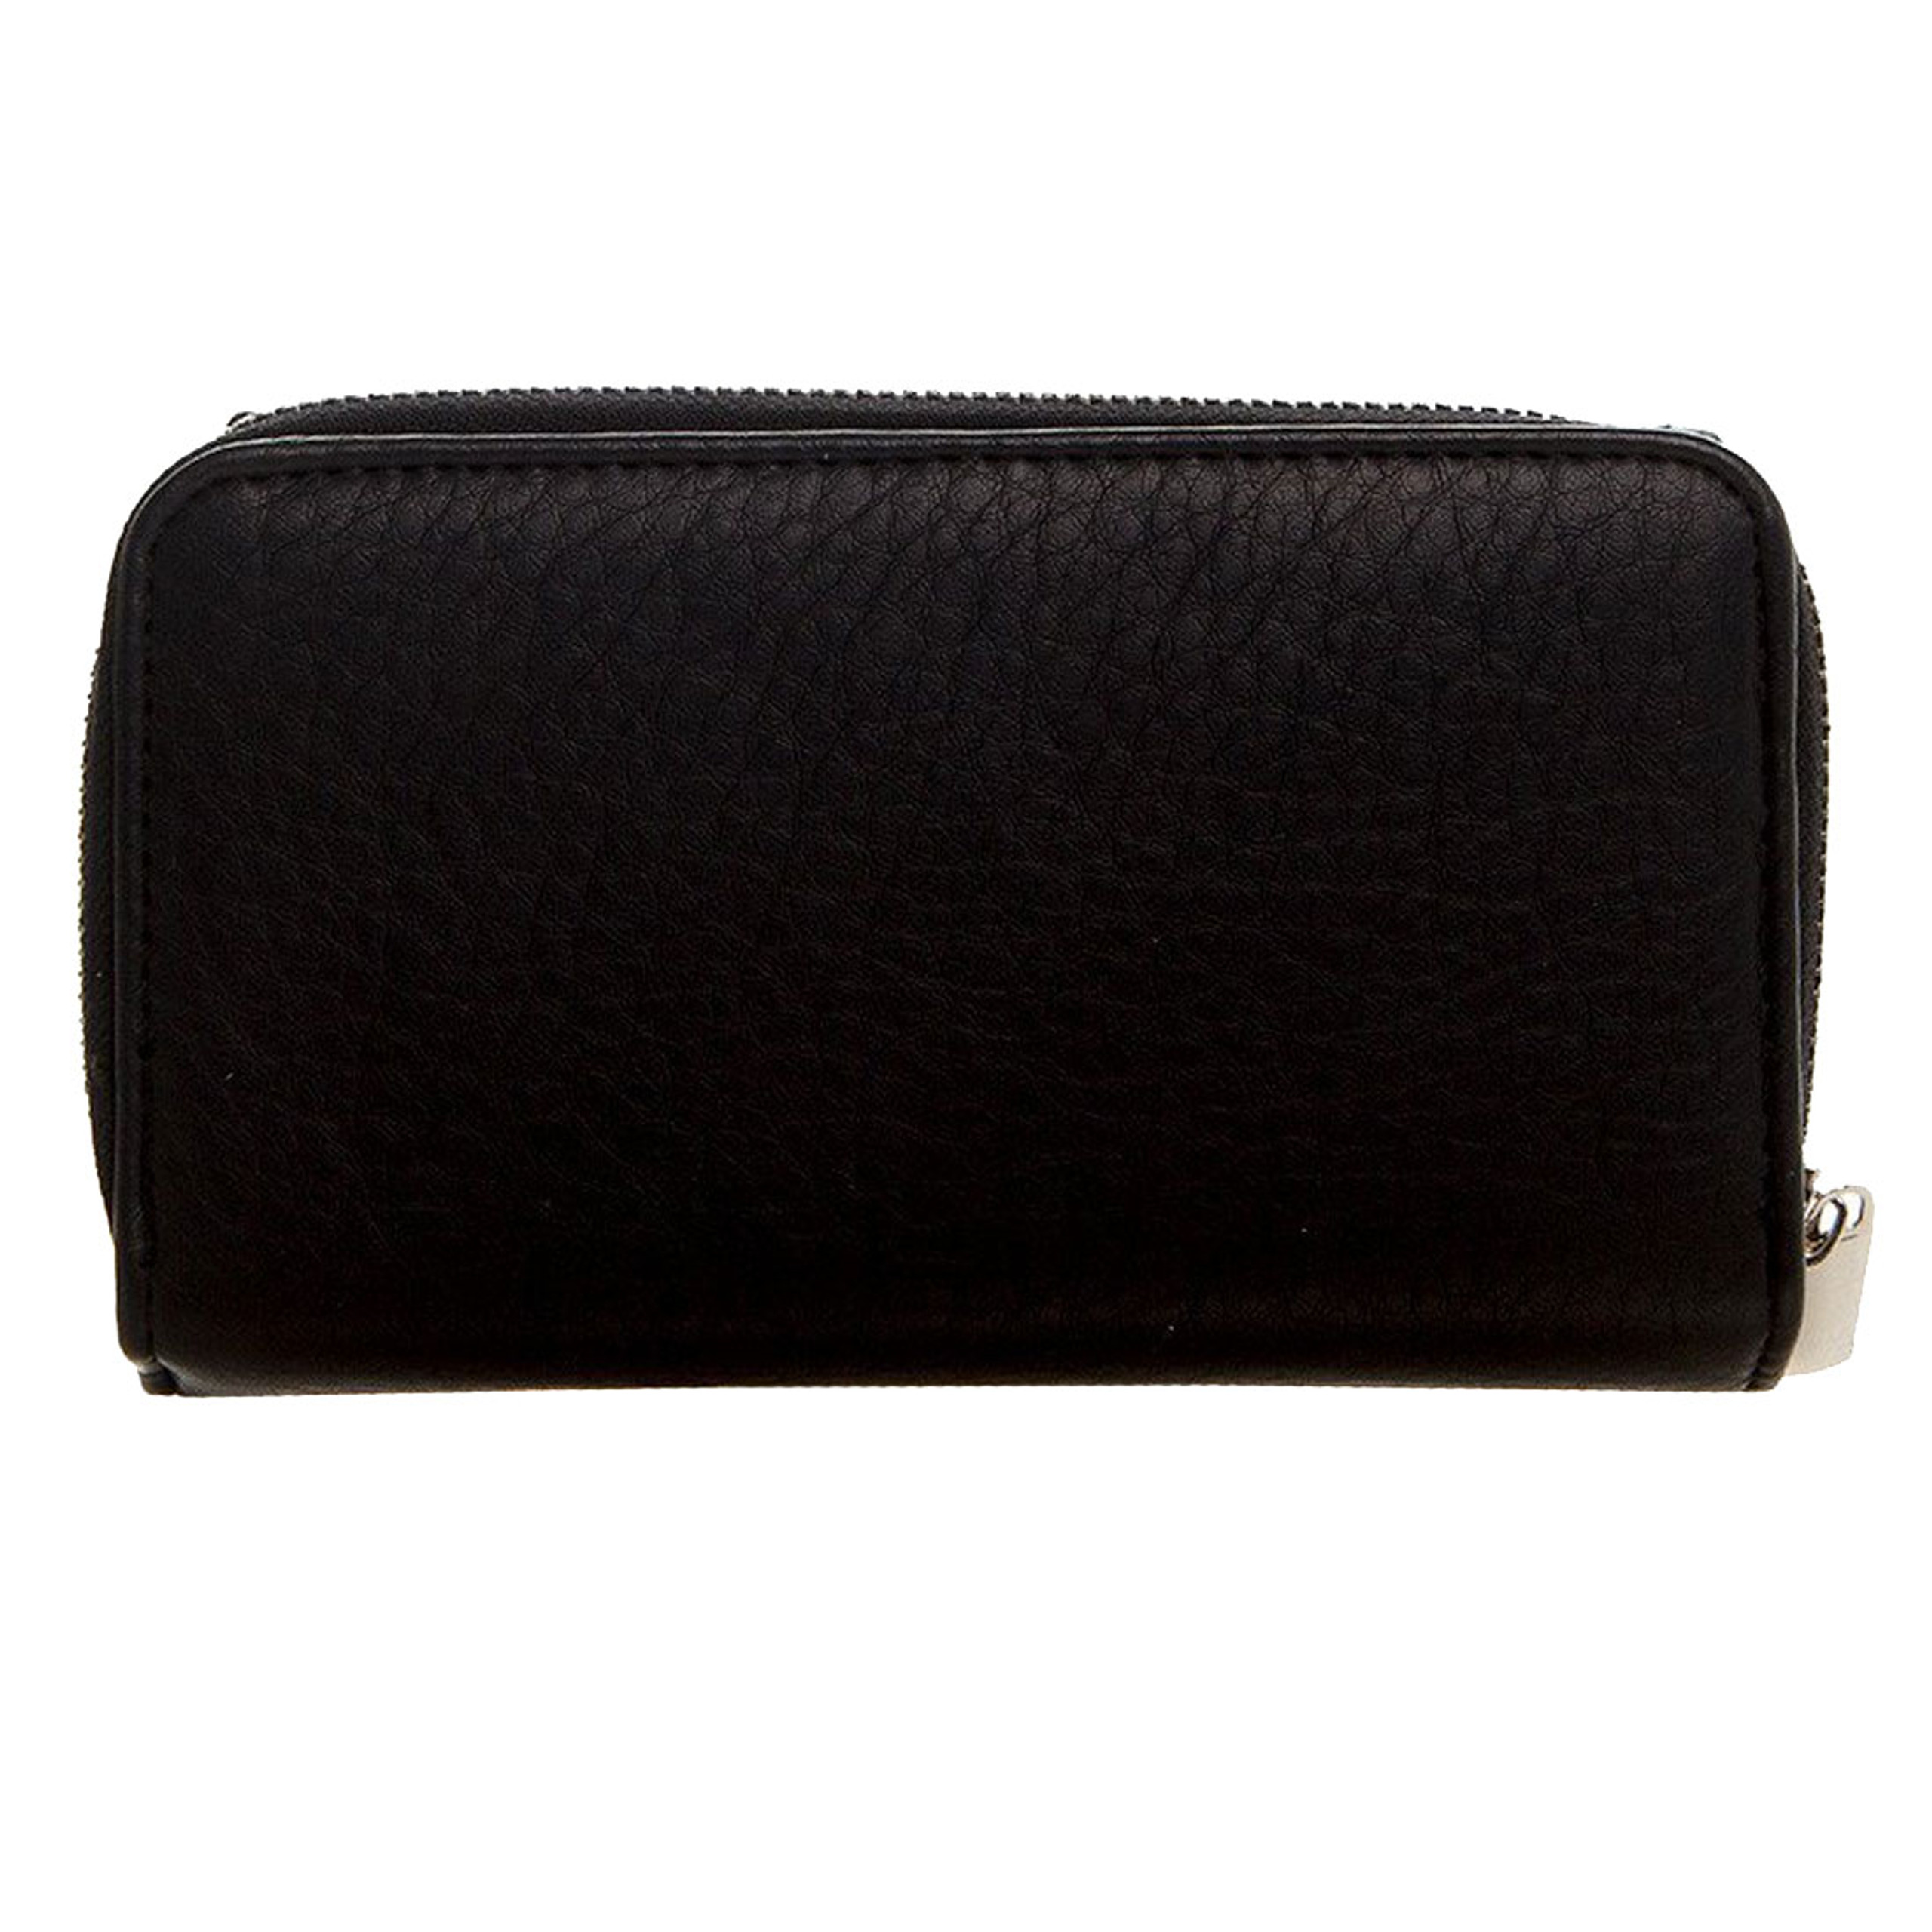 Women's Continental Wallet Black Clutch Zip Around Pocketbook - Purple ...